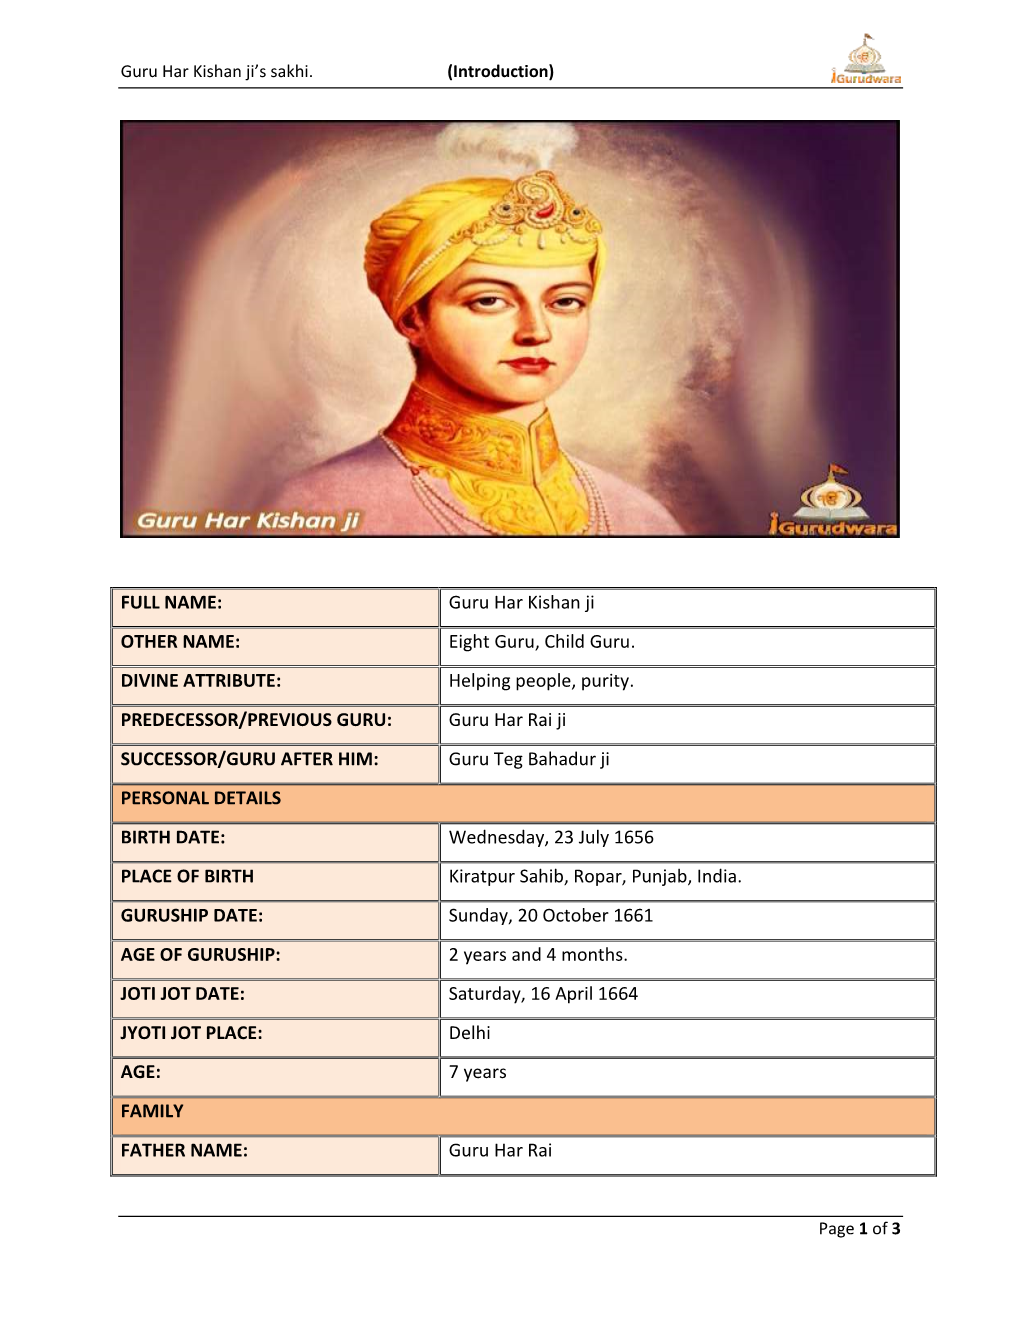 Guru Har Kishan Ji OTHER NAME: Eight Guru, Child Guru